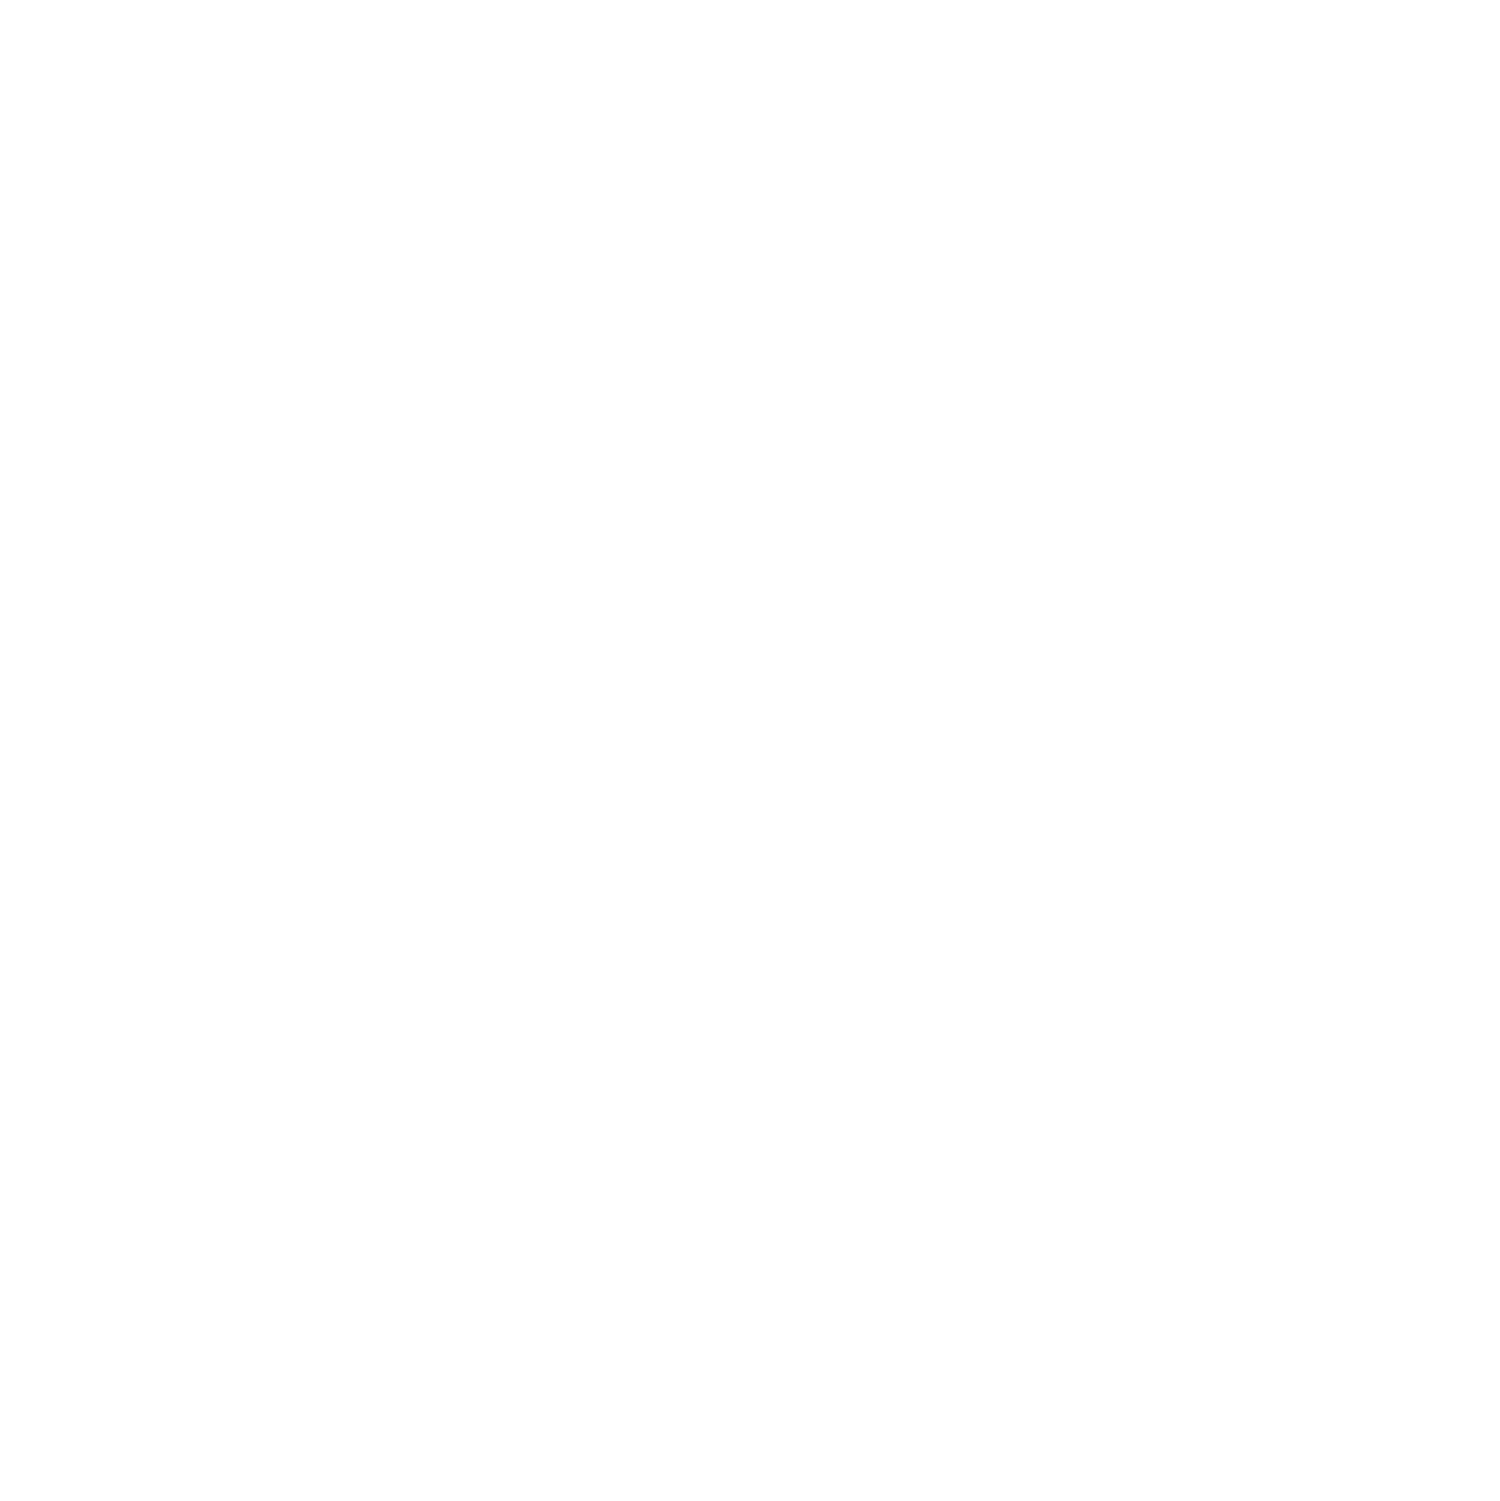 West Ridge Energy